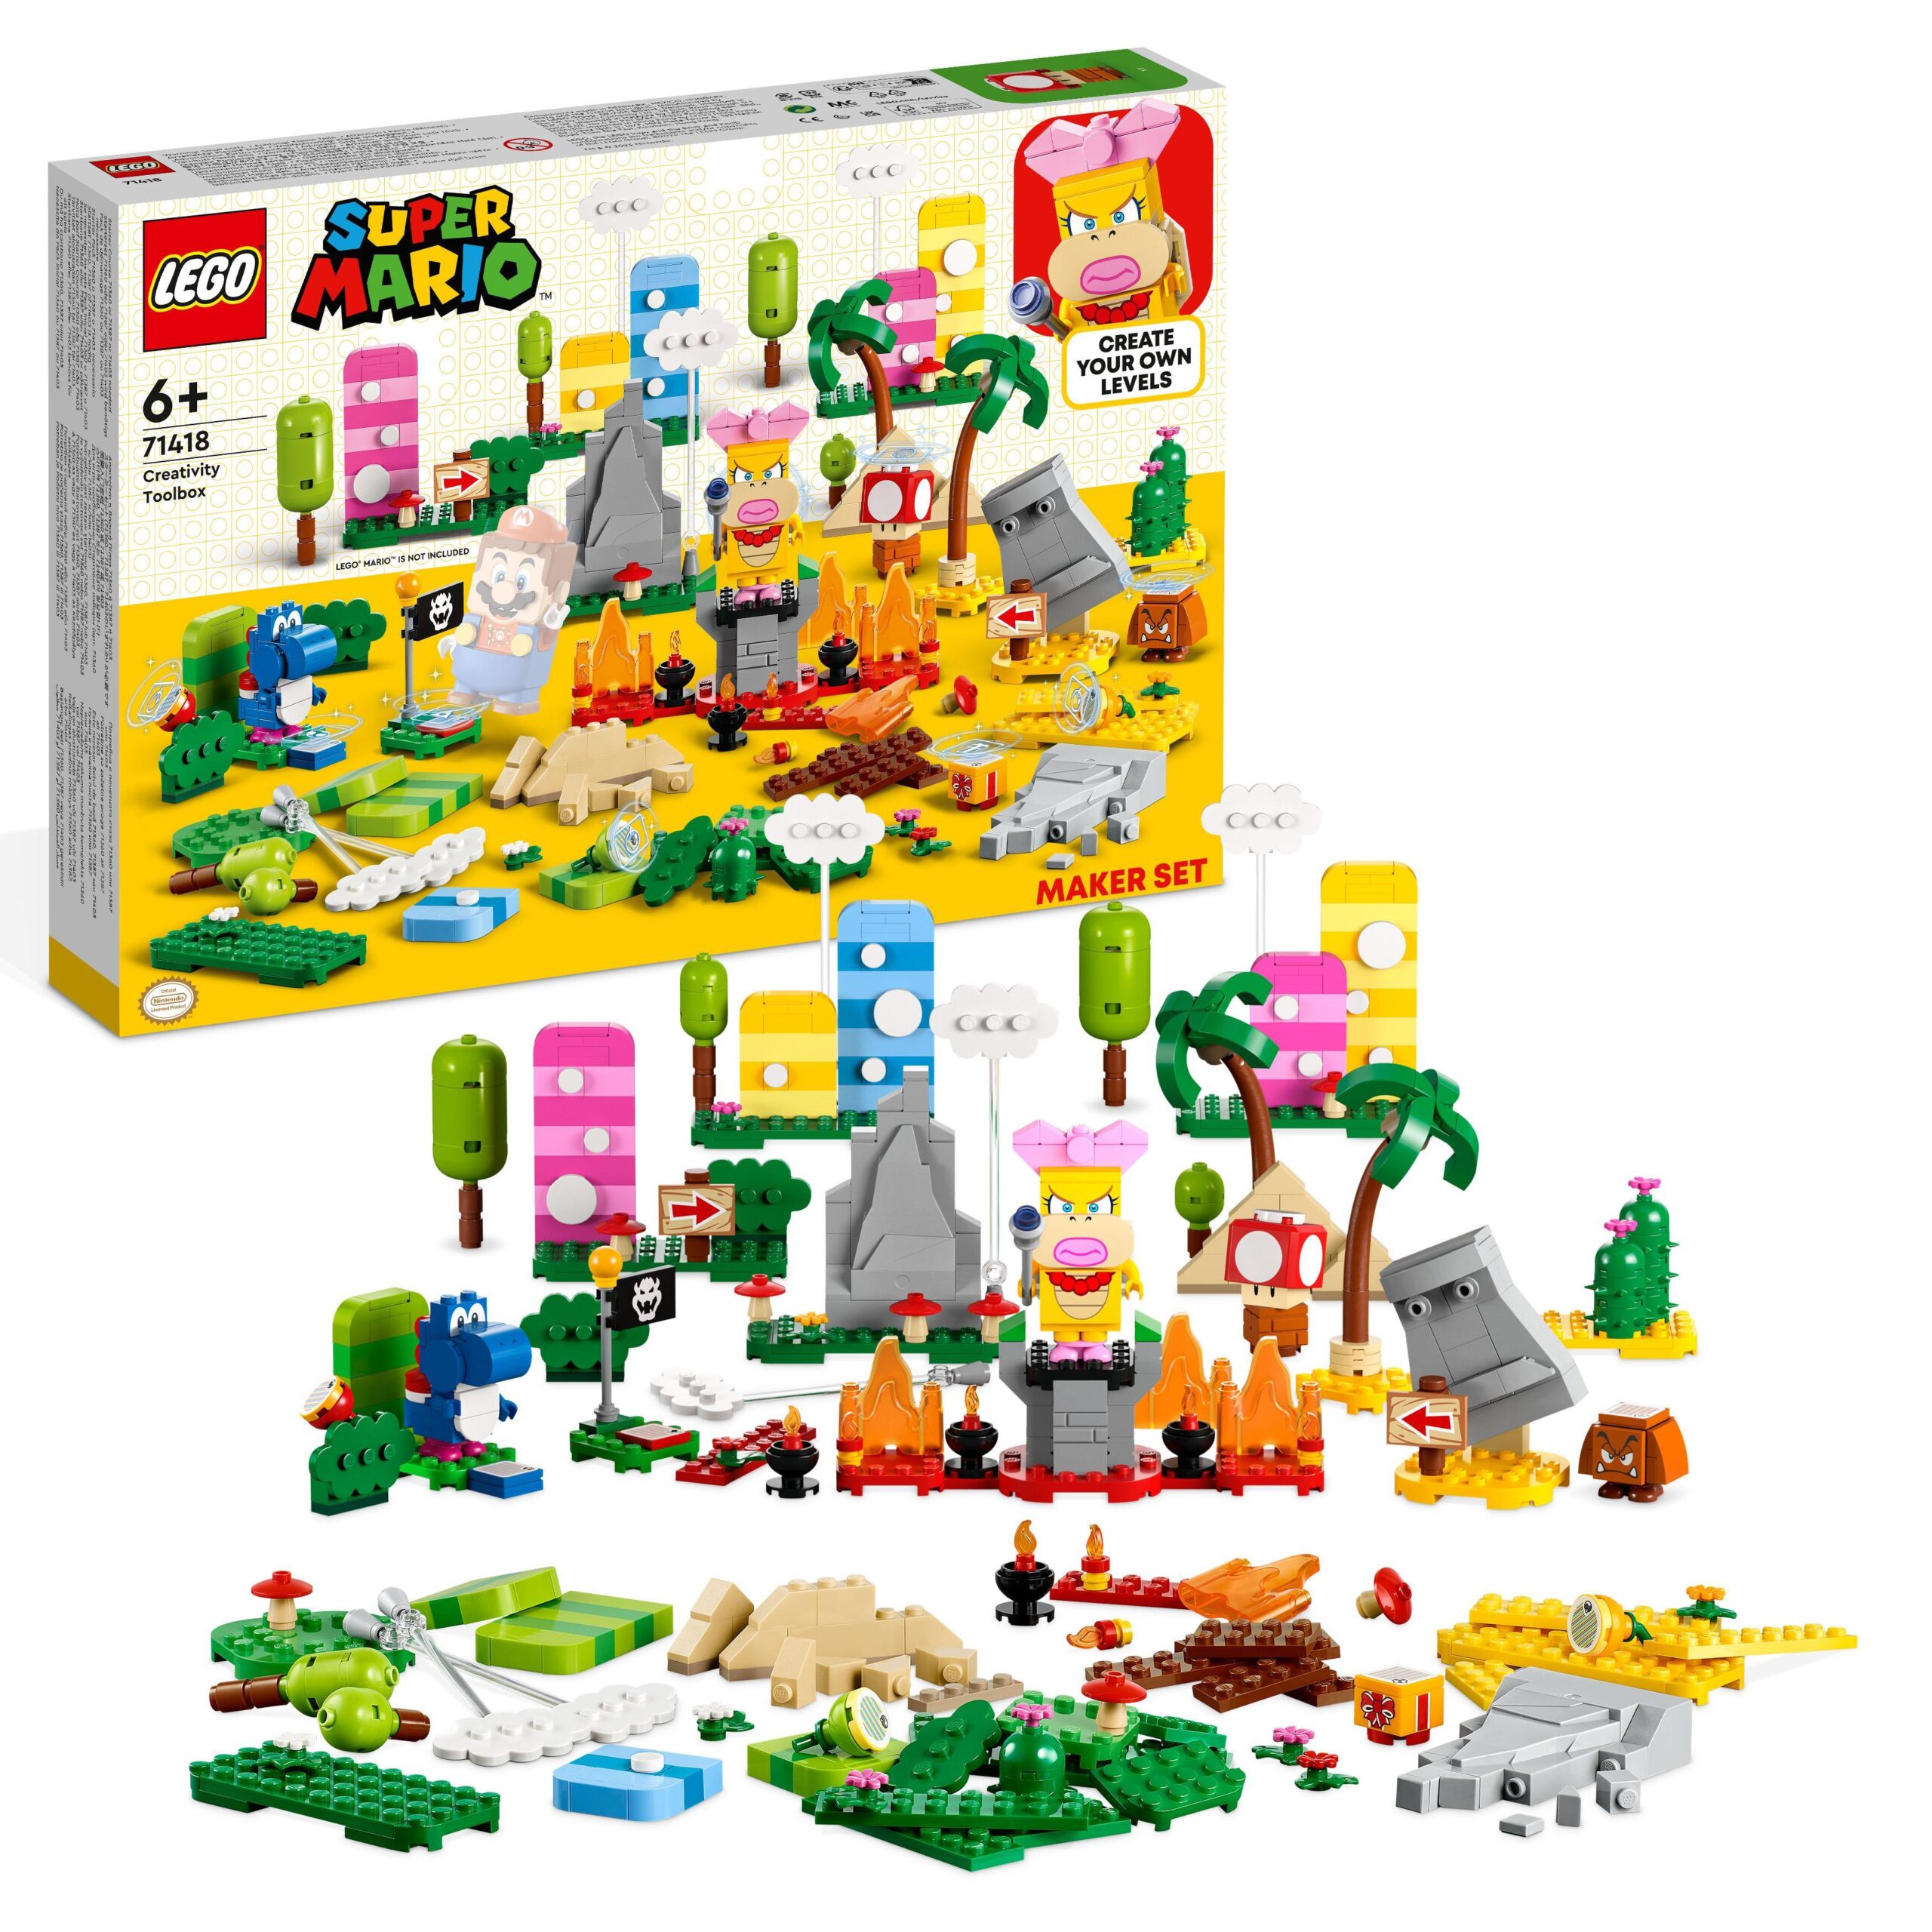 Lego super mario 71418 toolbox creativa, crea livelli con figure, elementi erbosi, desertici e lavici da abbinare agli starter pack - LEGO® Super Mario™, Super Mario